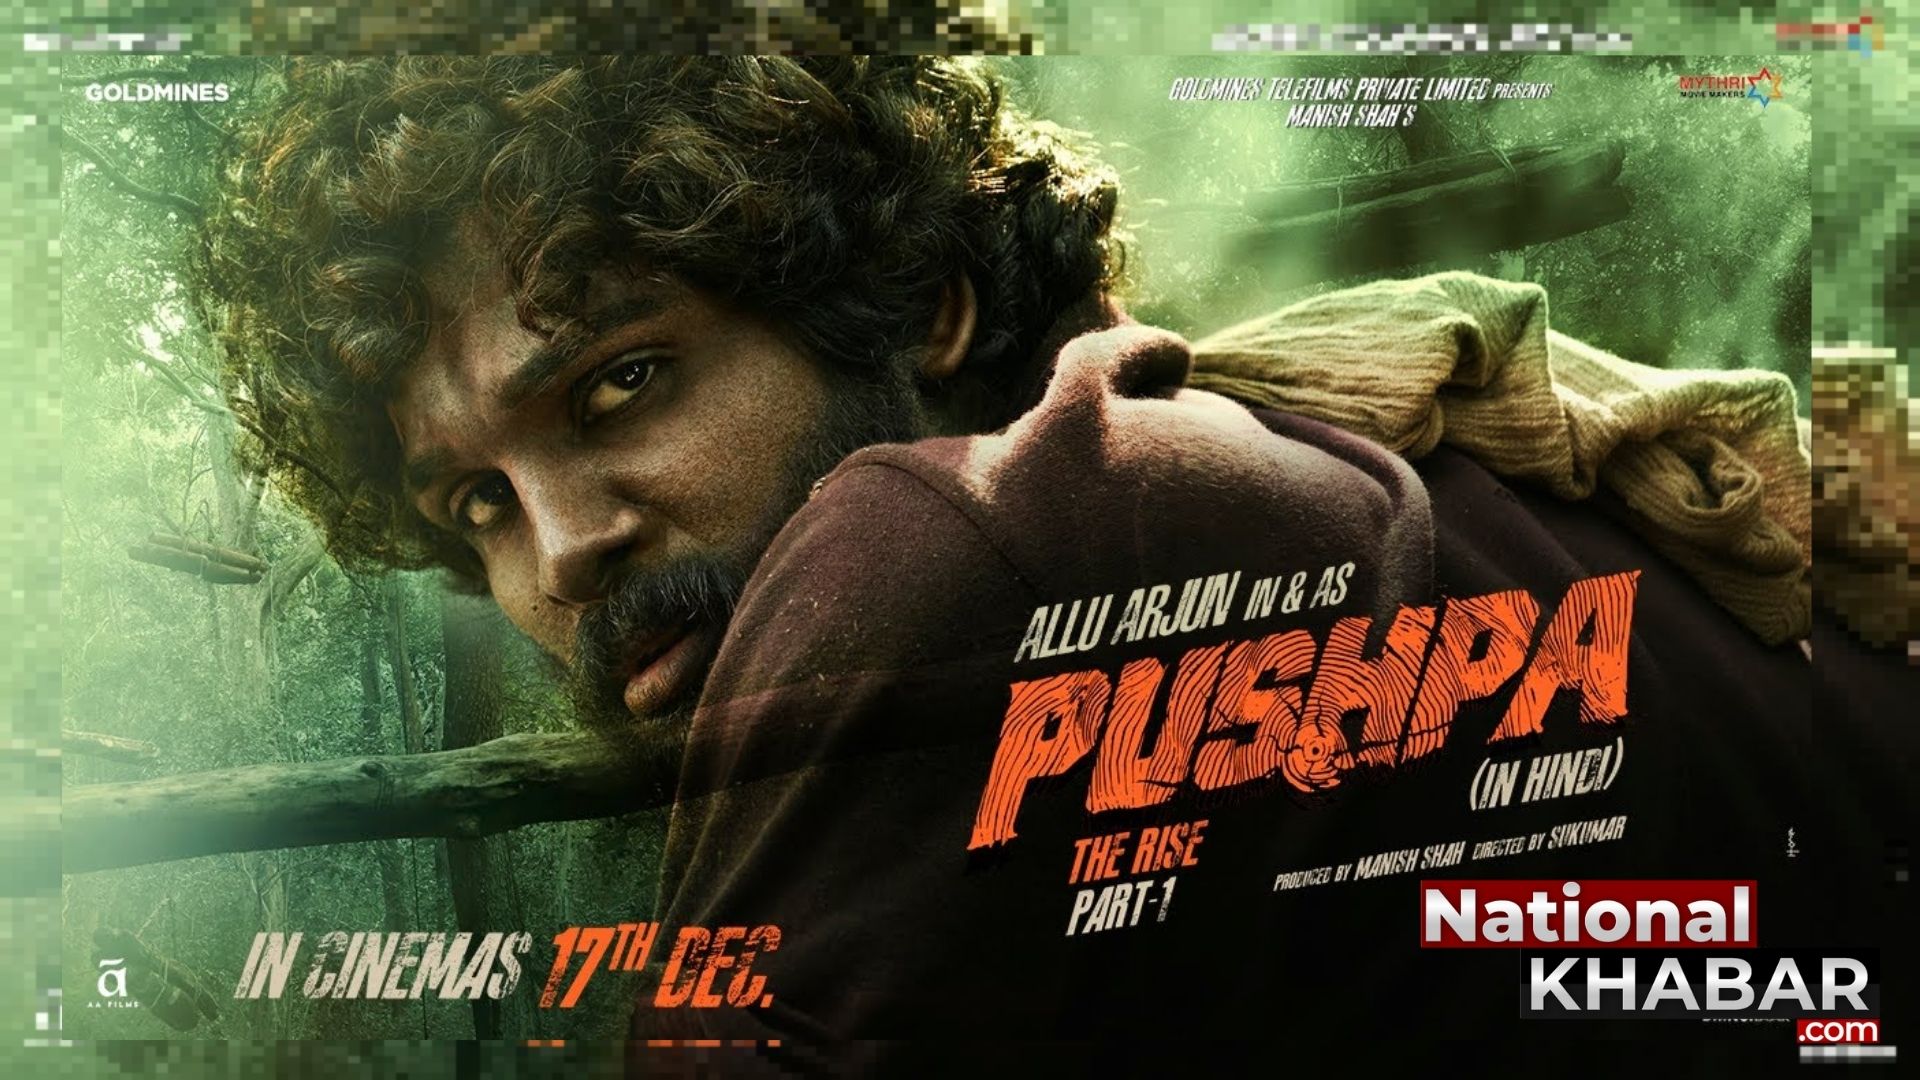 Pushpa – The Rise: श्रेयस तलपड़े फिल्म ‘पुष्पा द राइज’ के हिंदी ट्रेलर में अल्लू अर्जुन की आवाज बने